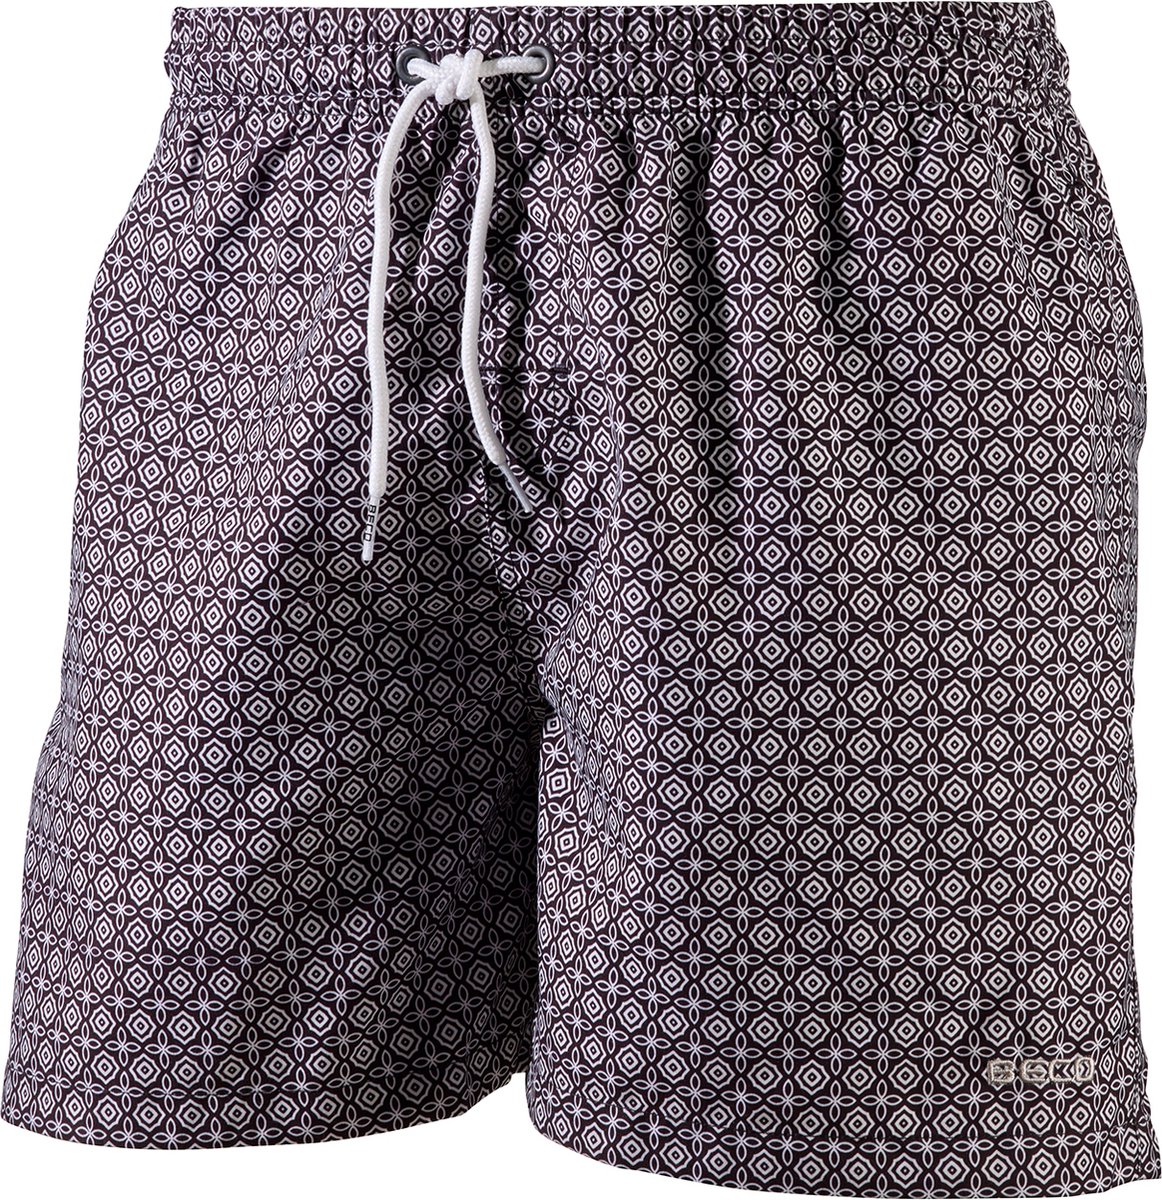 BECO shorts, binnenbroekje, elastische band, lengte 42 cm, 3 zakjes, zwart, maat S